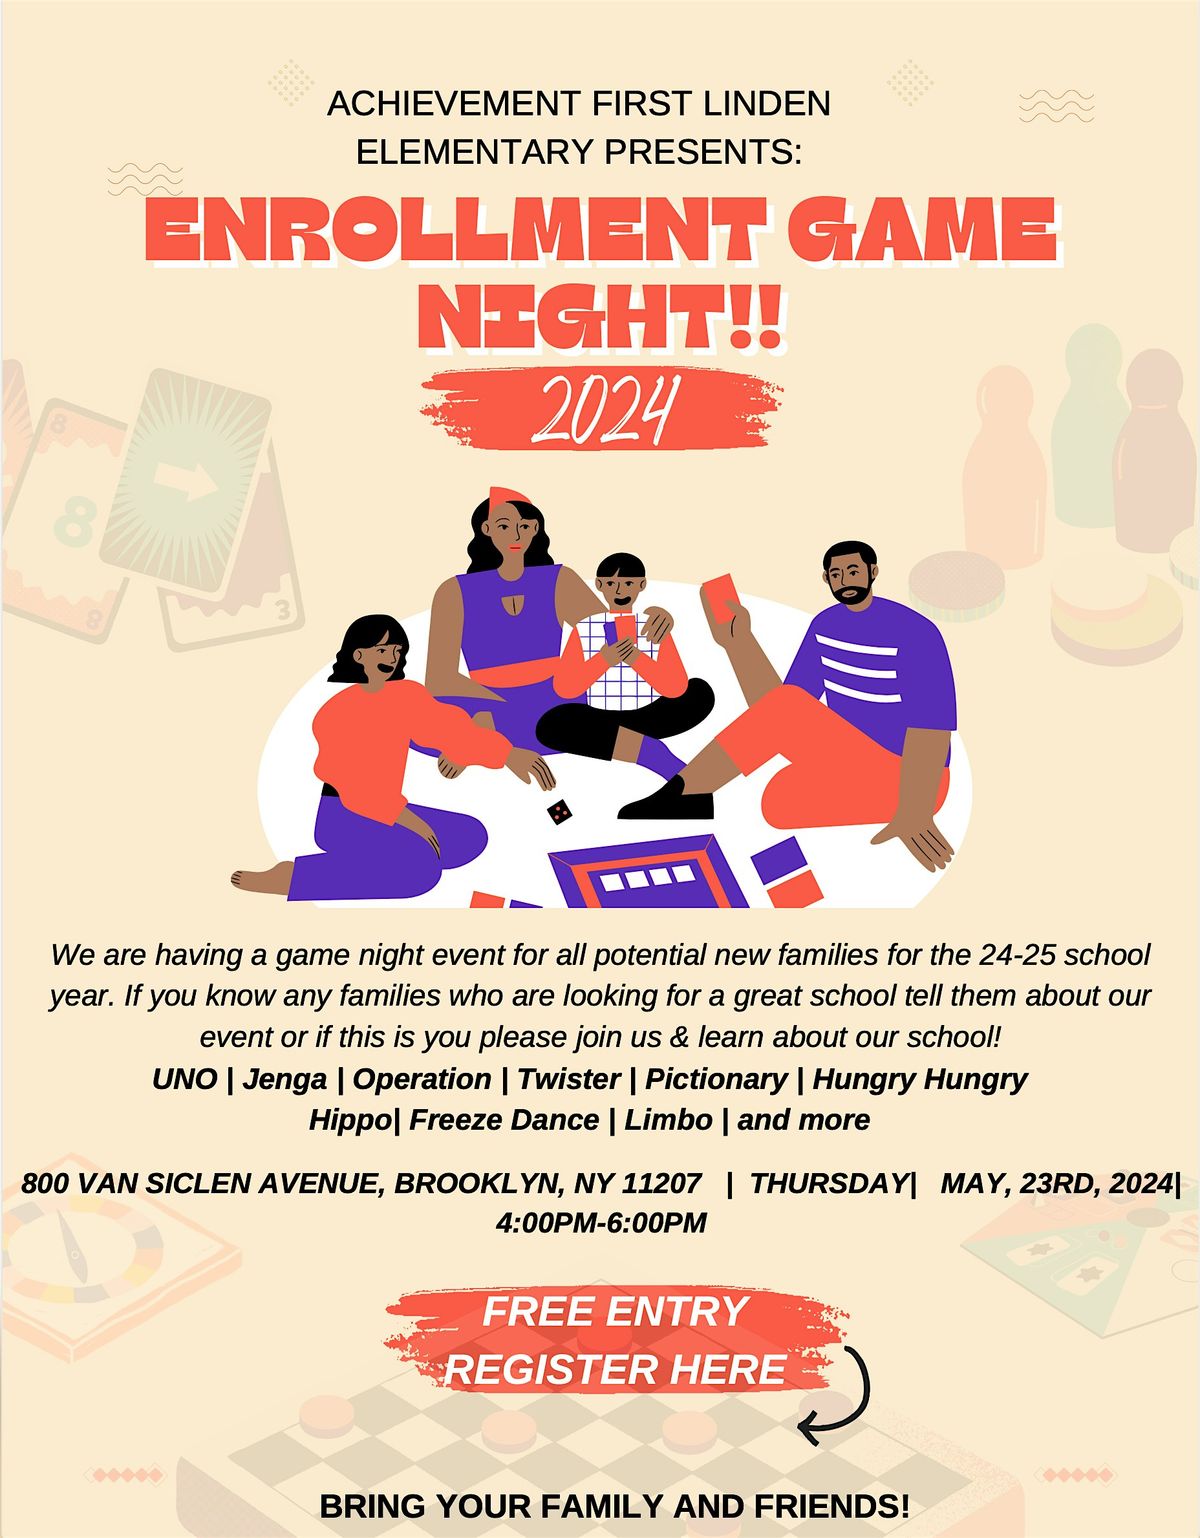 Achievement First Linden Elementary: Enrollment Game Night!